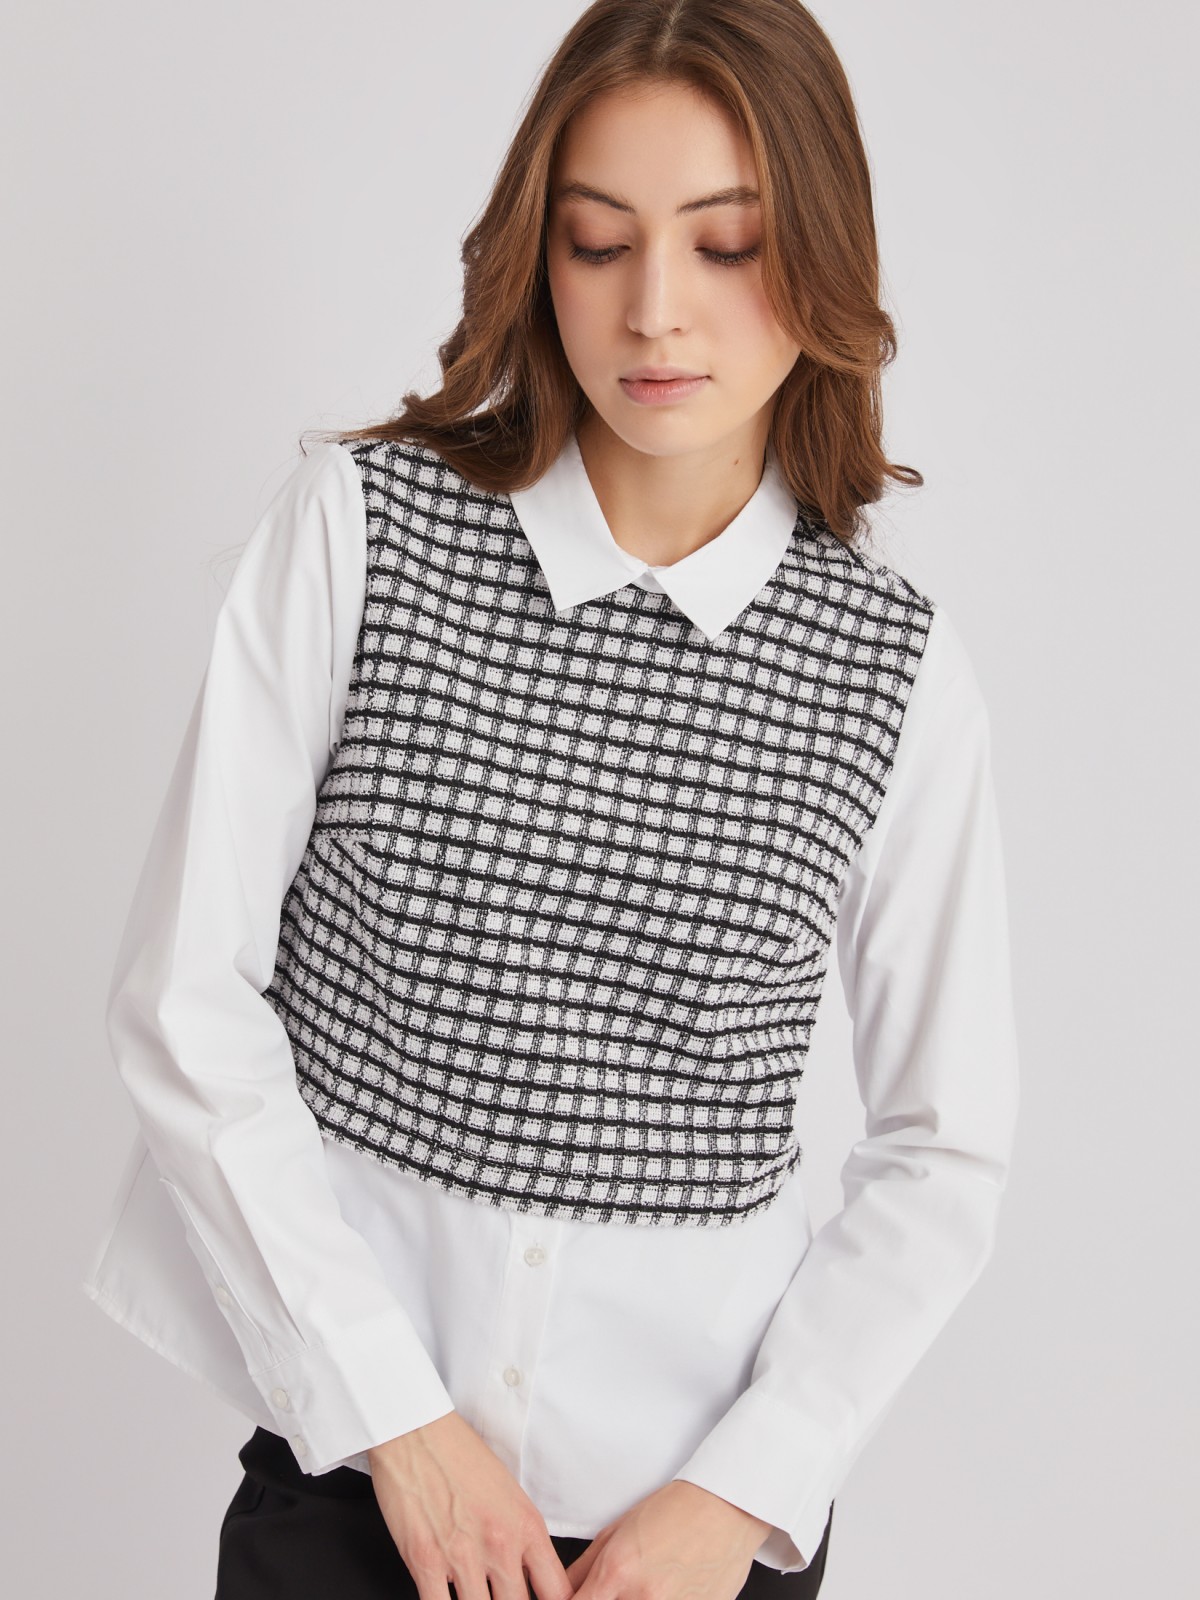 Комбинированная блузка с имитацией жилетки